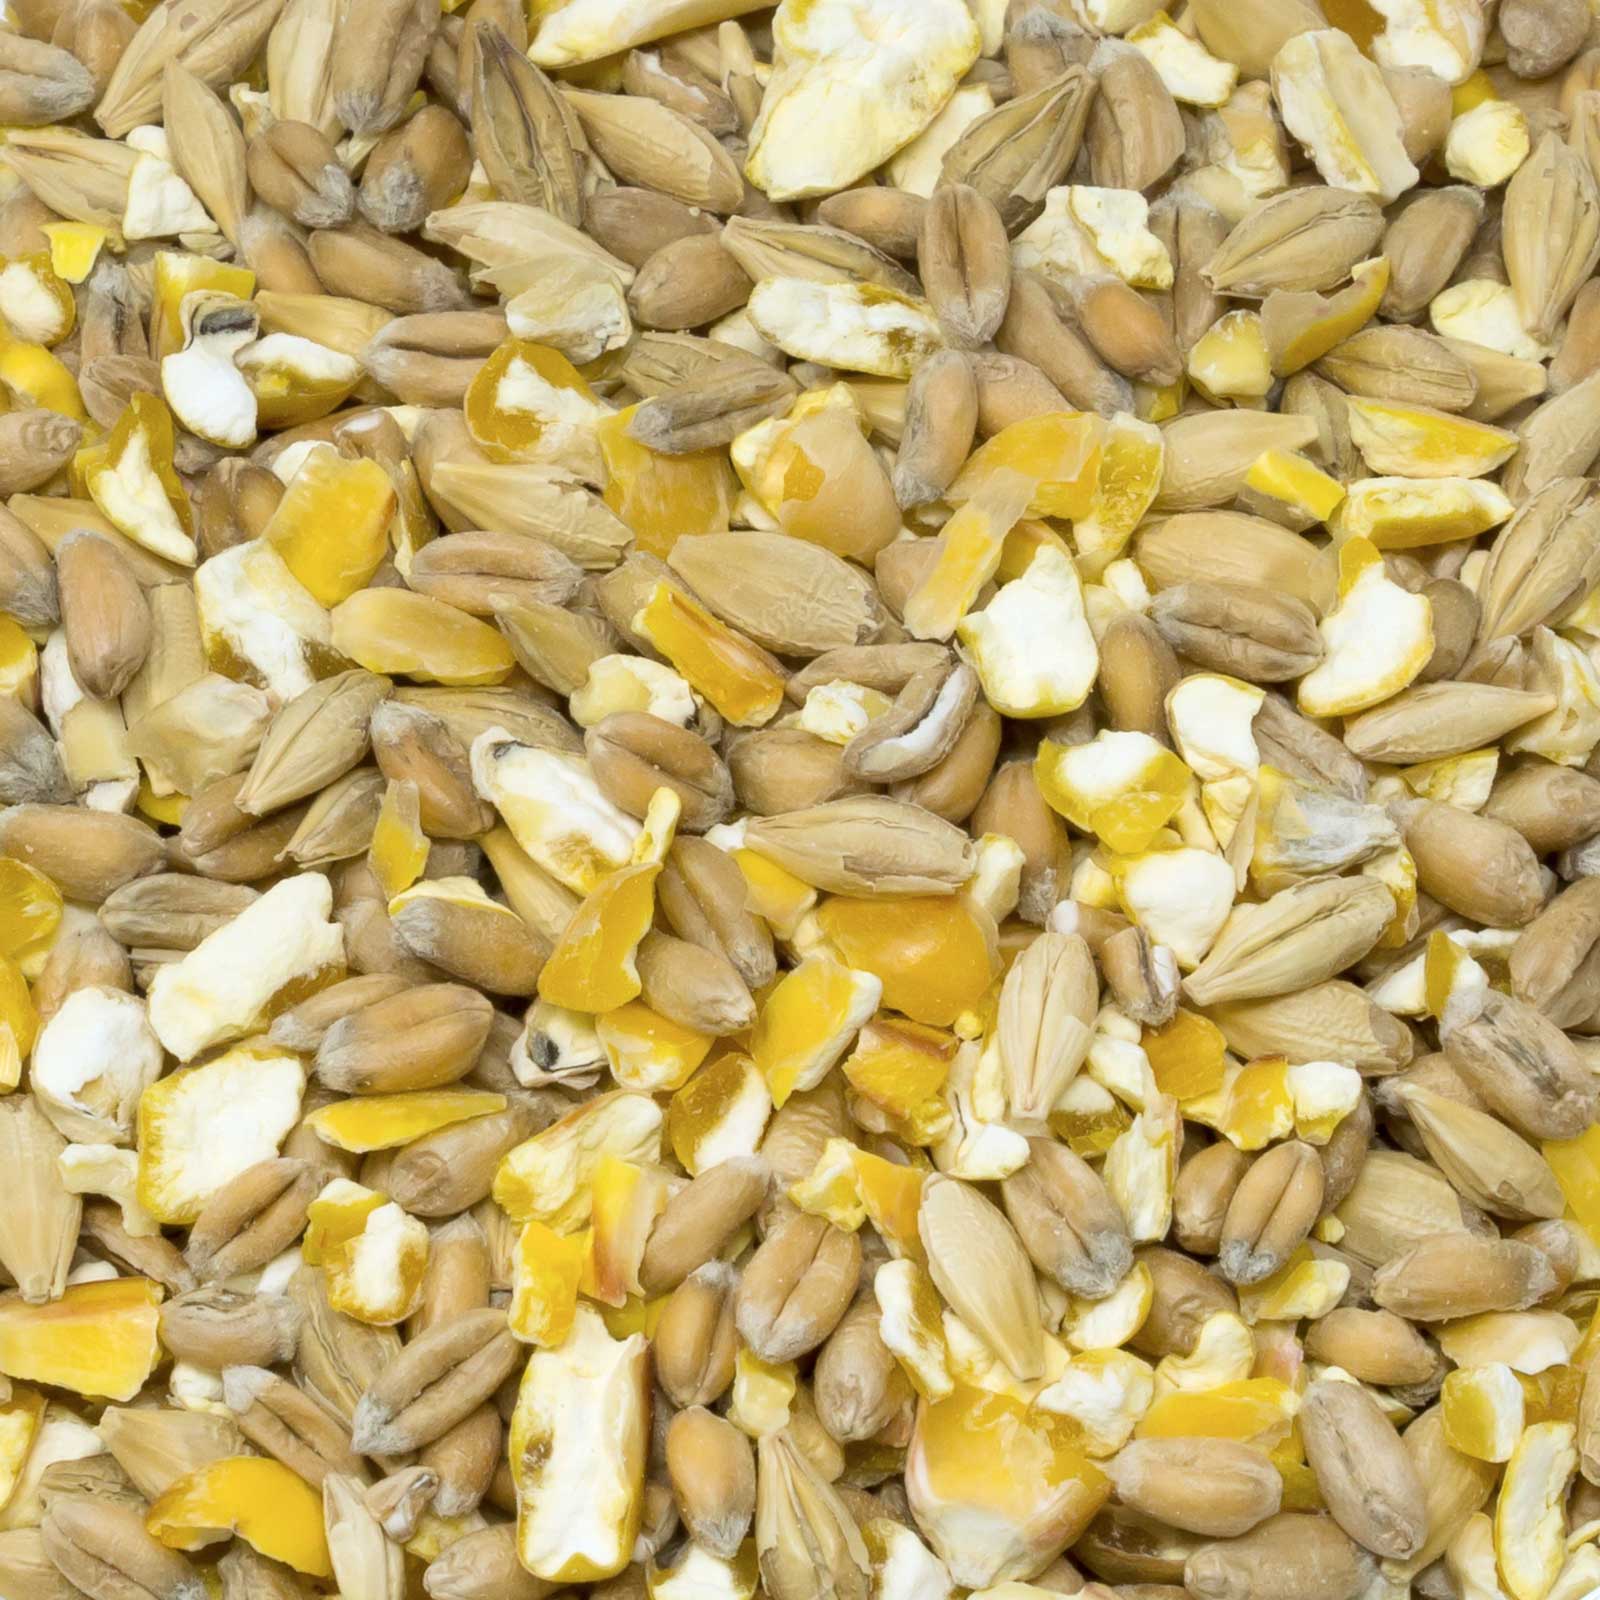 Leimüller Poultry Grain Feed 3-Grain